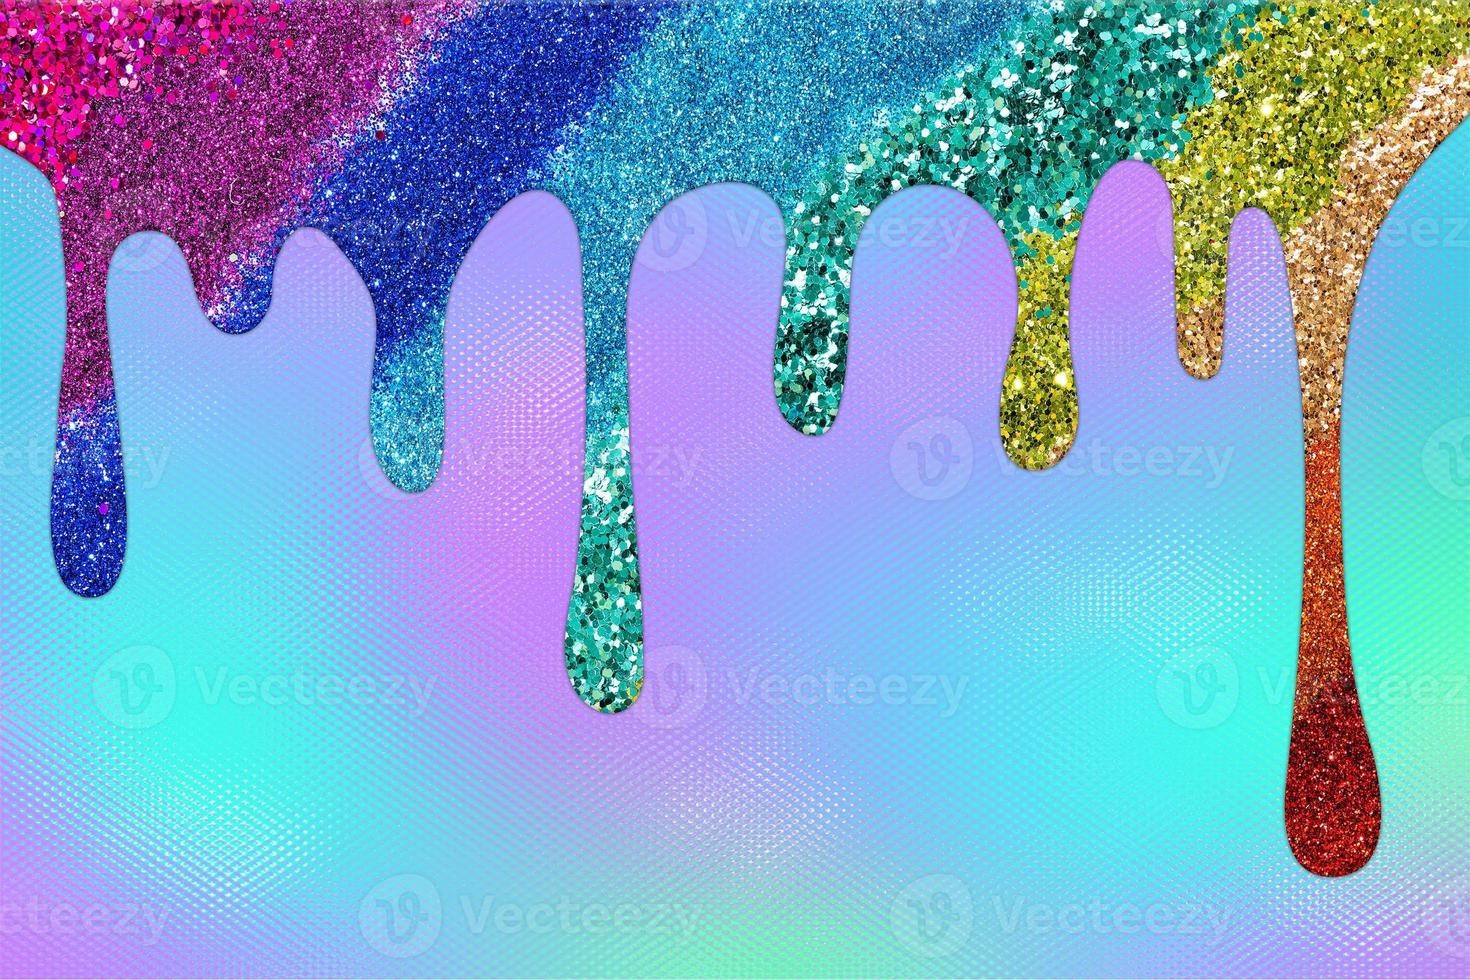 regenbogentropfender glitzerhintergrund, tropfender glitzerhintergrund foto